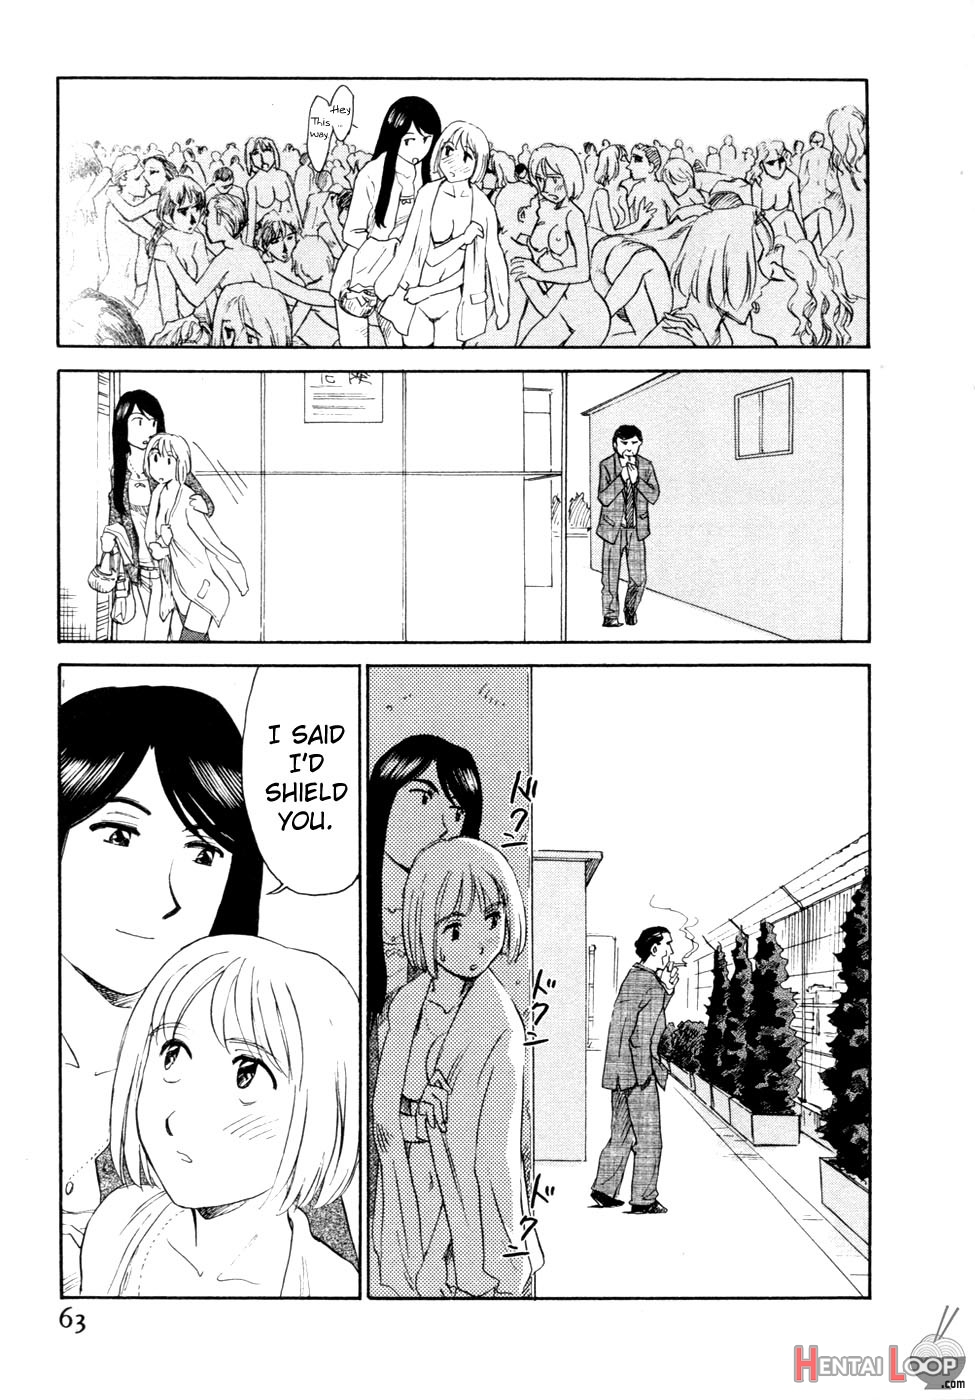 Hana No Iro Ch. 1-9 page 61